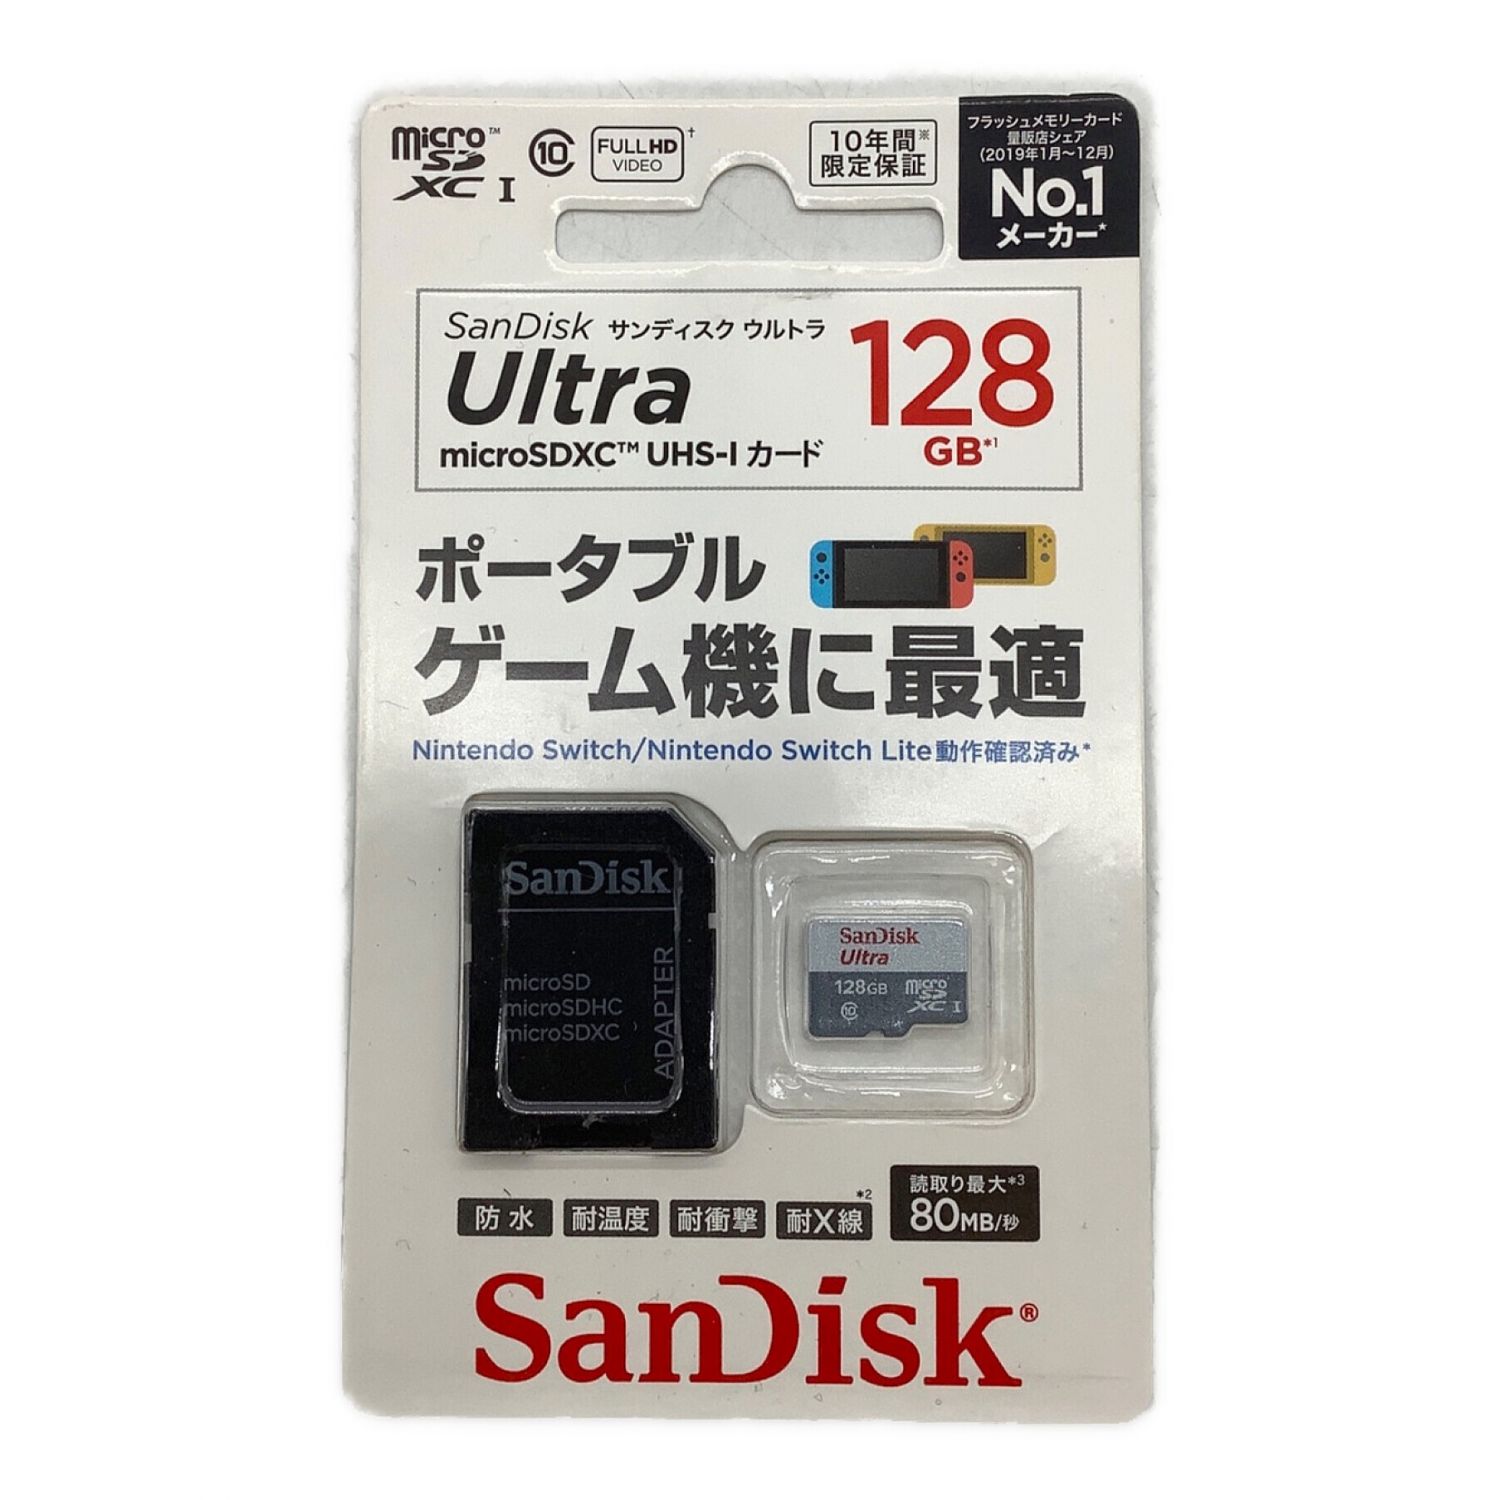 サンディスク microSD 1TB UHS-I Class10 Nintendo Switch メーカー動作確認済 SanDisk Ult 